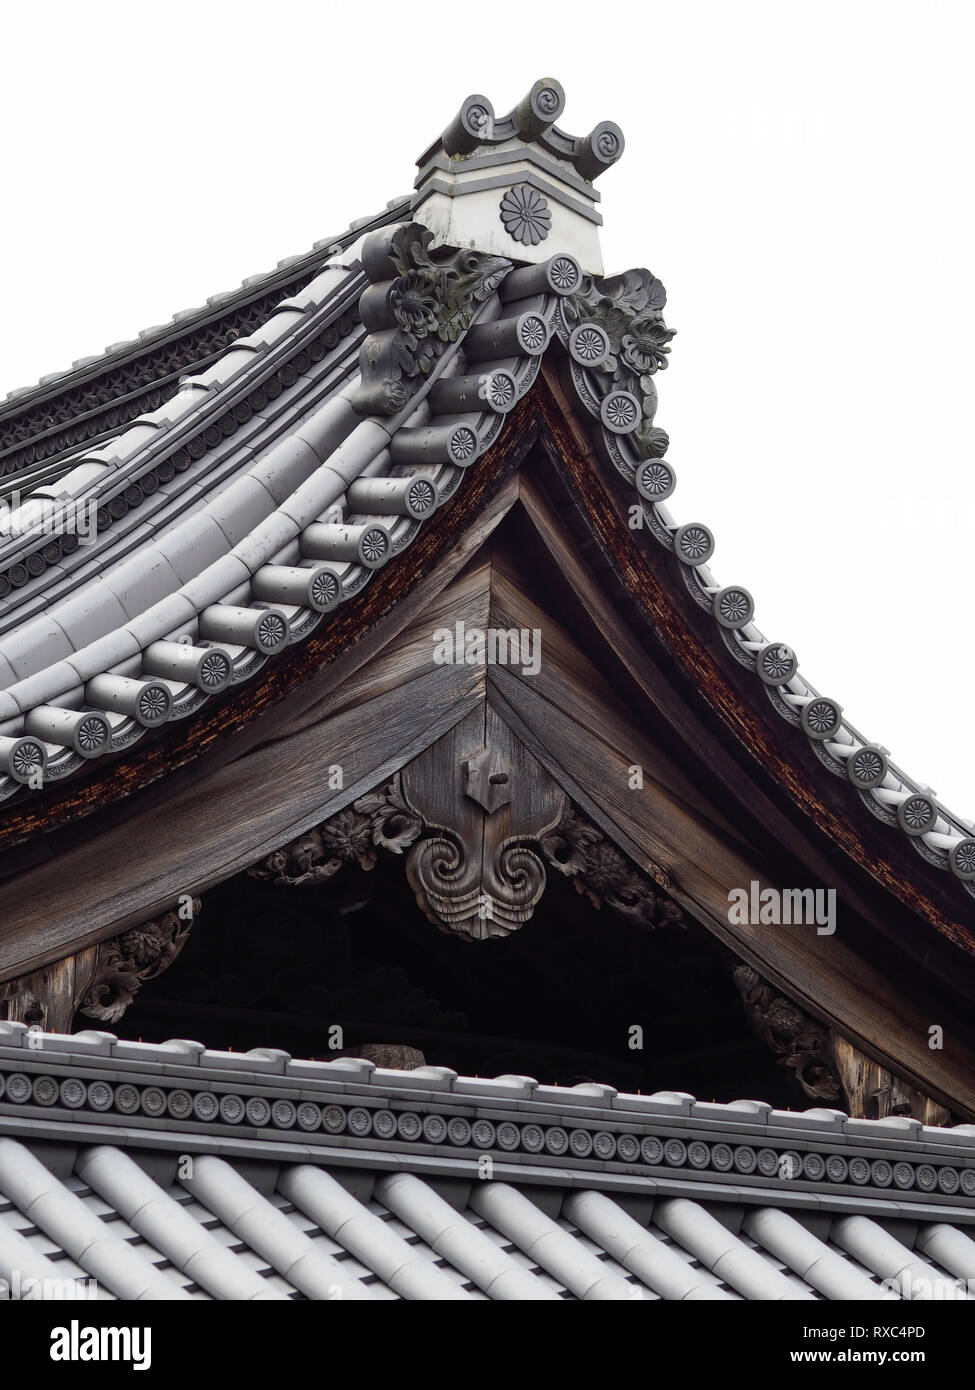 Kyoto, Japón - 15 Oct 2018: la rica ornamentación y detalles arquitectónicos de una pagoda japonesa en un santuario budista de techo Foto de stock